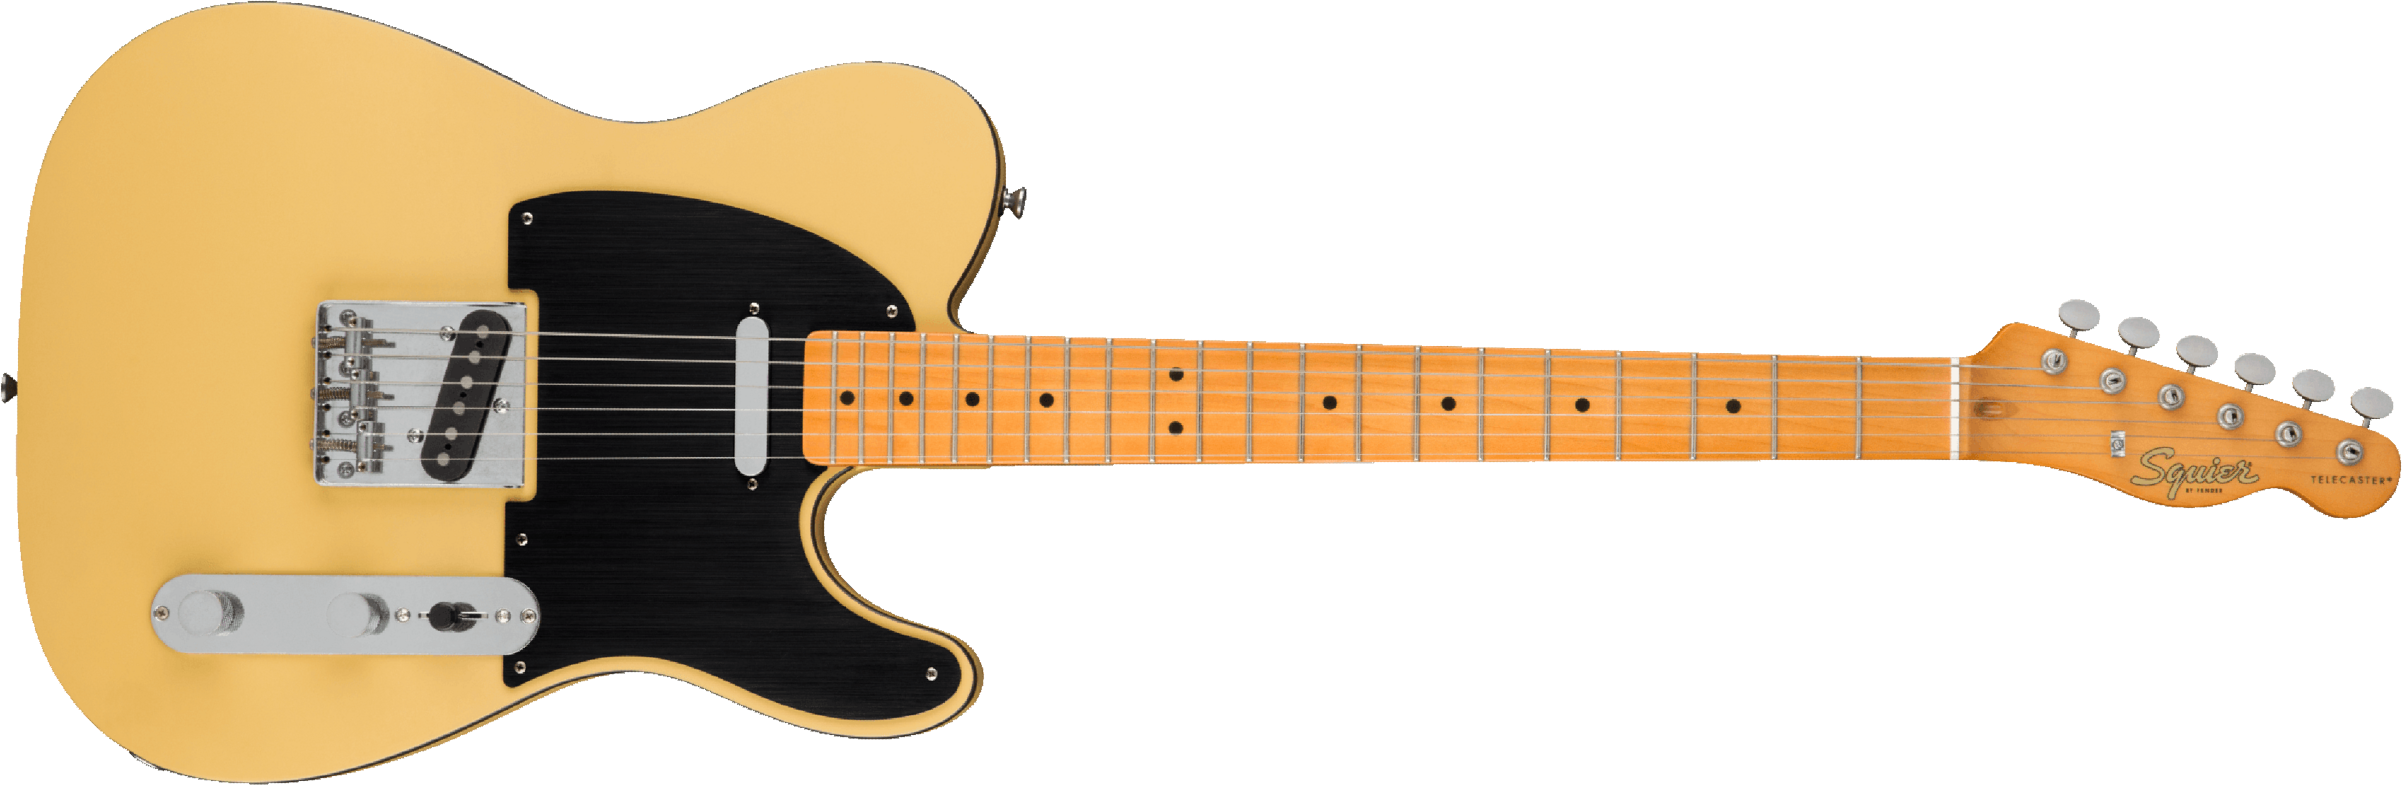 Squier Tele 40th Anniversary Vintage Edition Mn - Satin Vintage Blonde - Guitarra eléctrica con forma de tel - Main picture